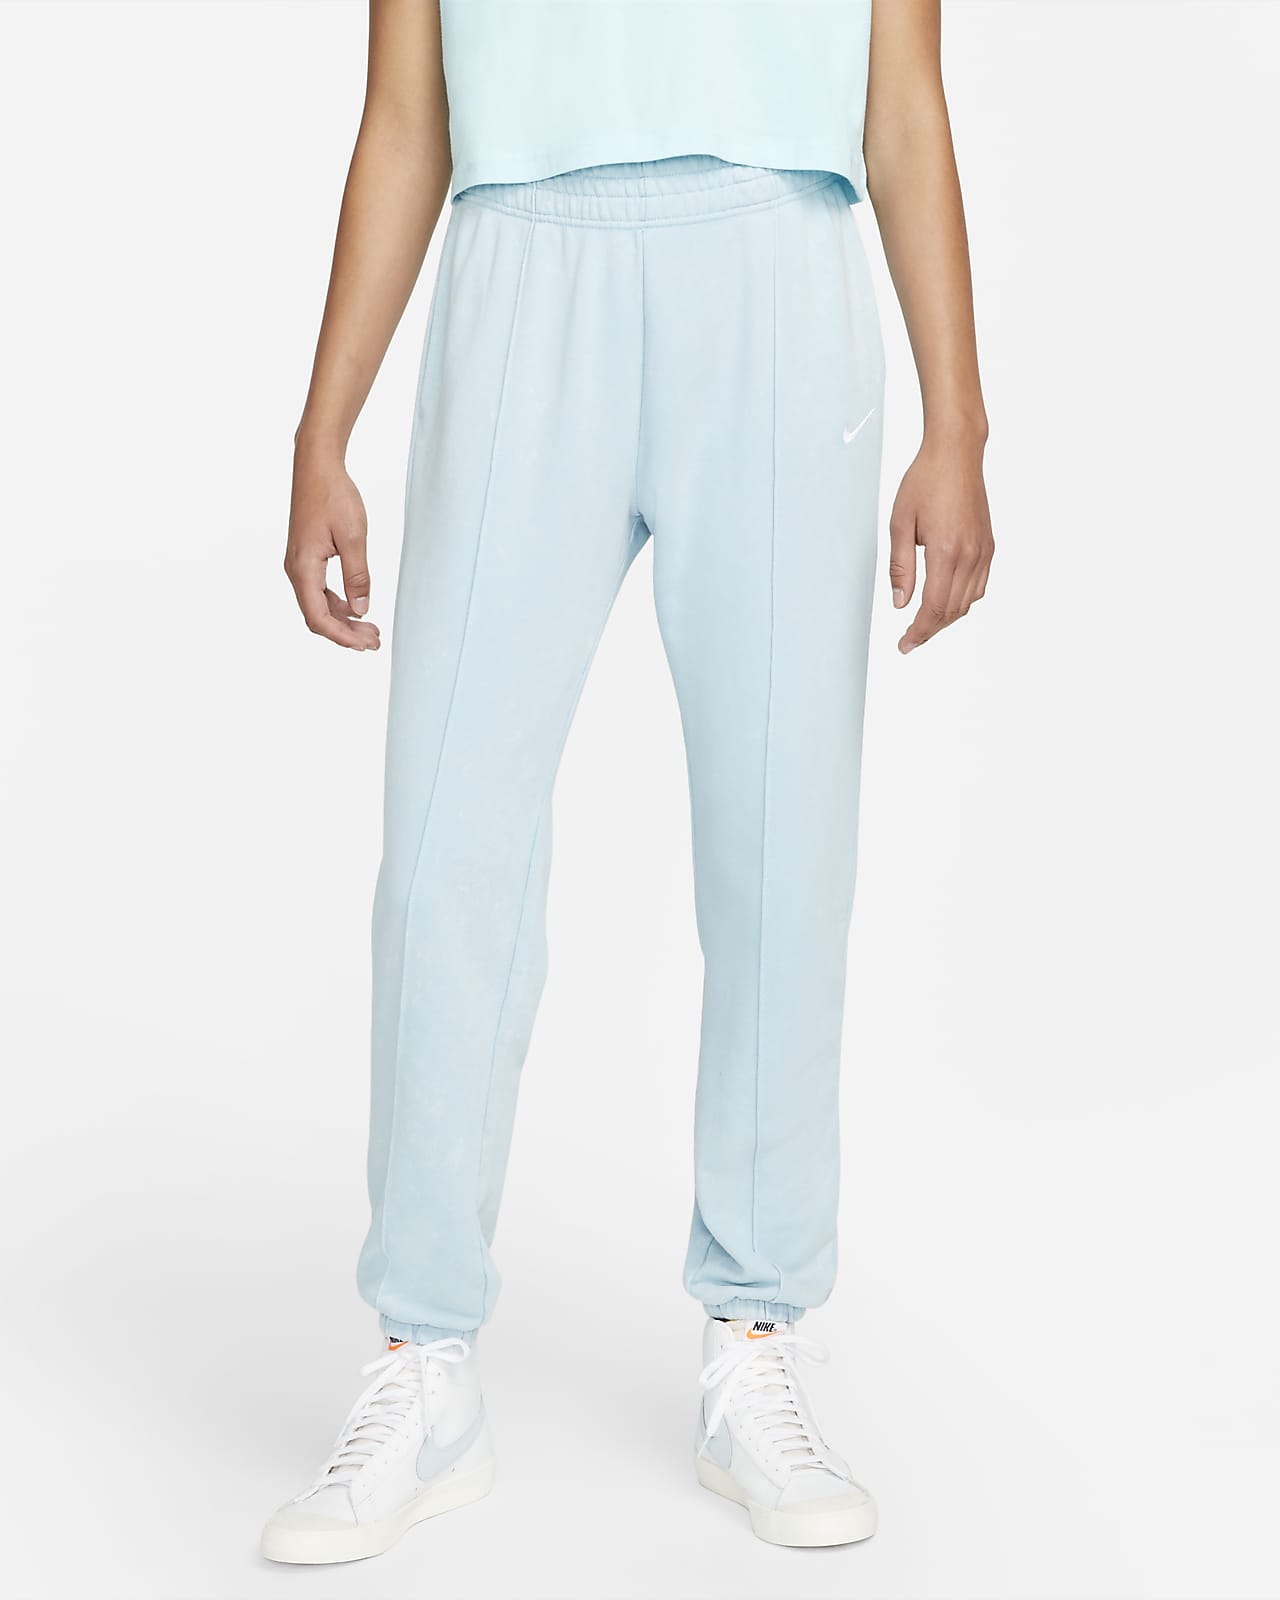 Damskie spodnie z dzianiny z efektem sprania Nike Sportswear Essential Collection